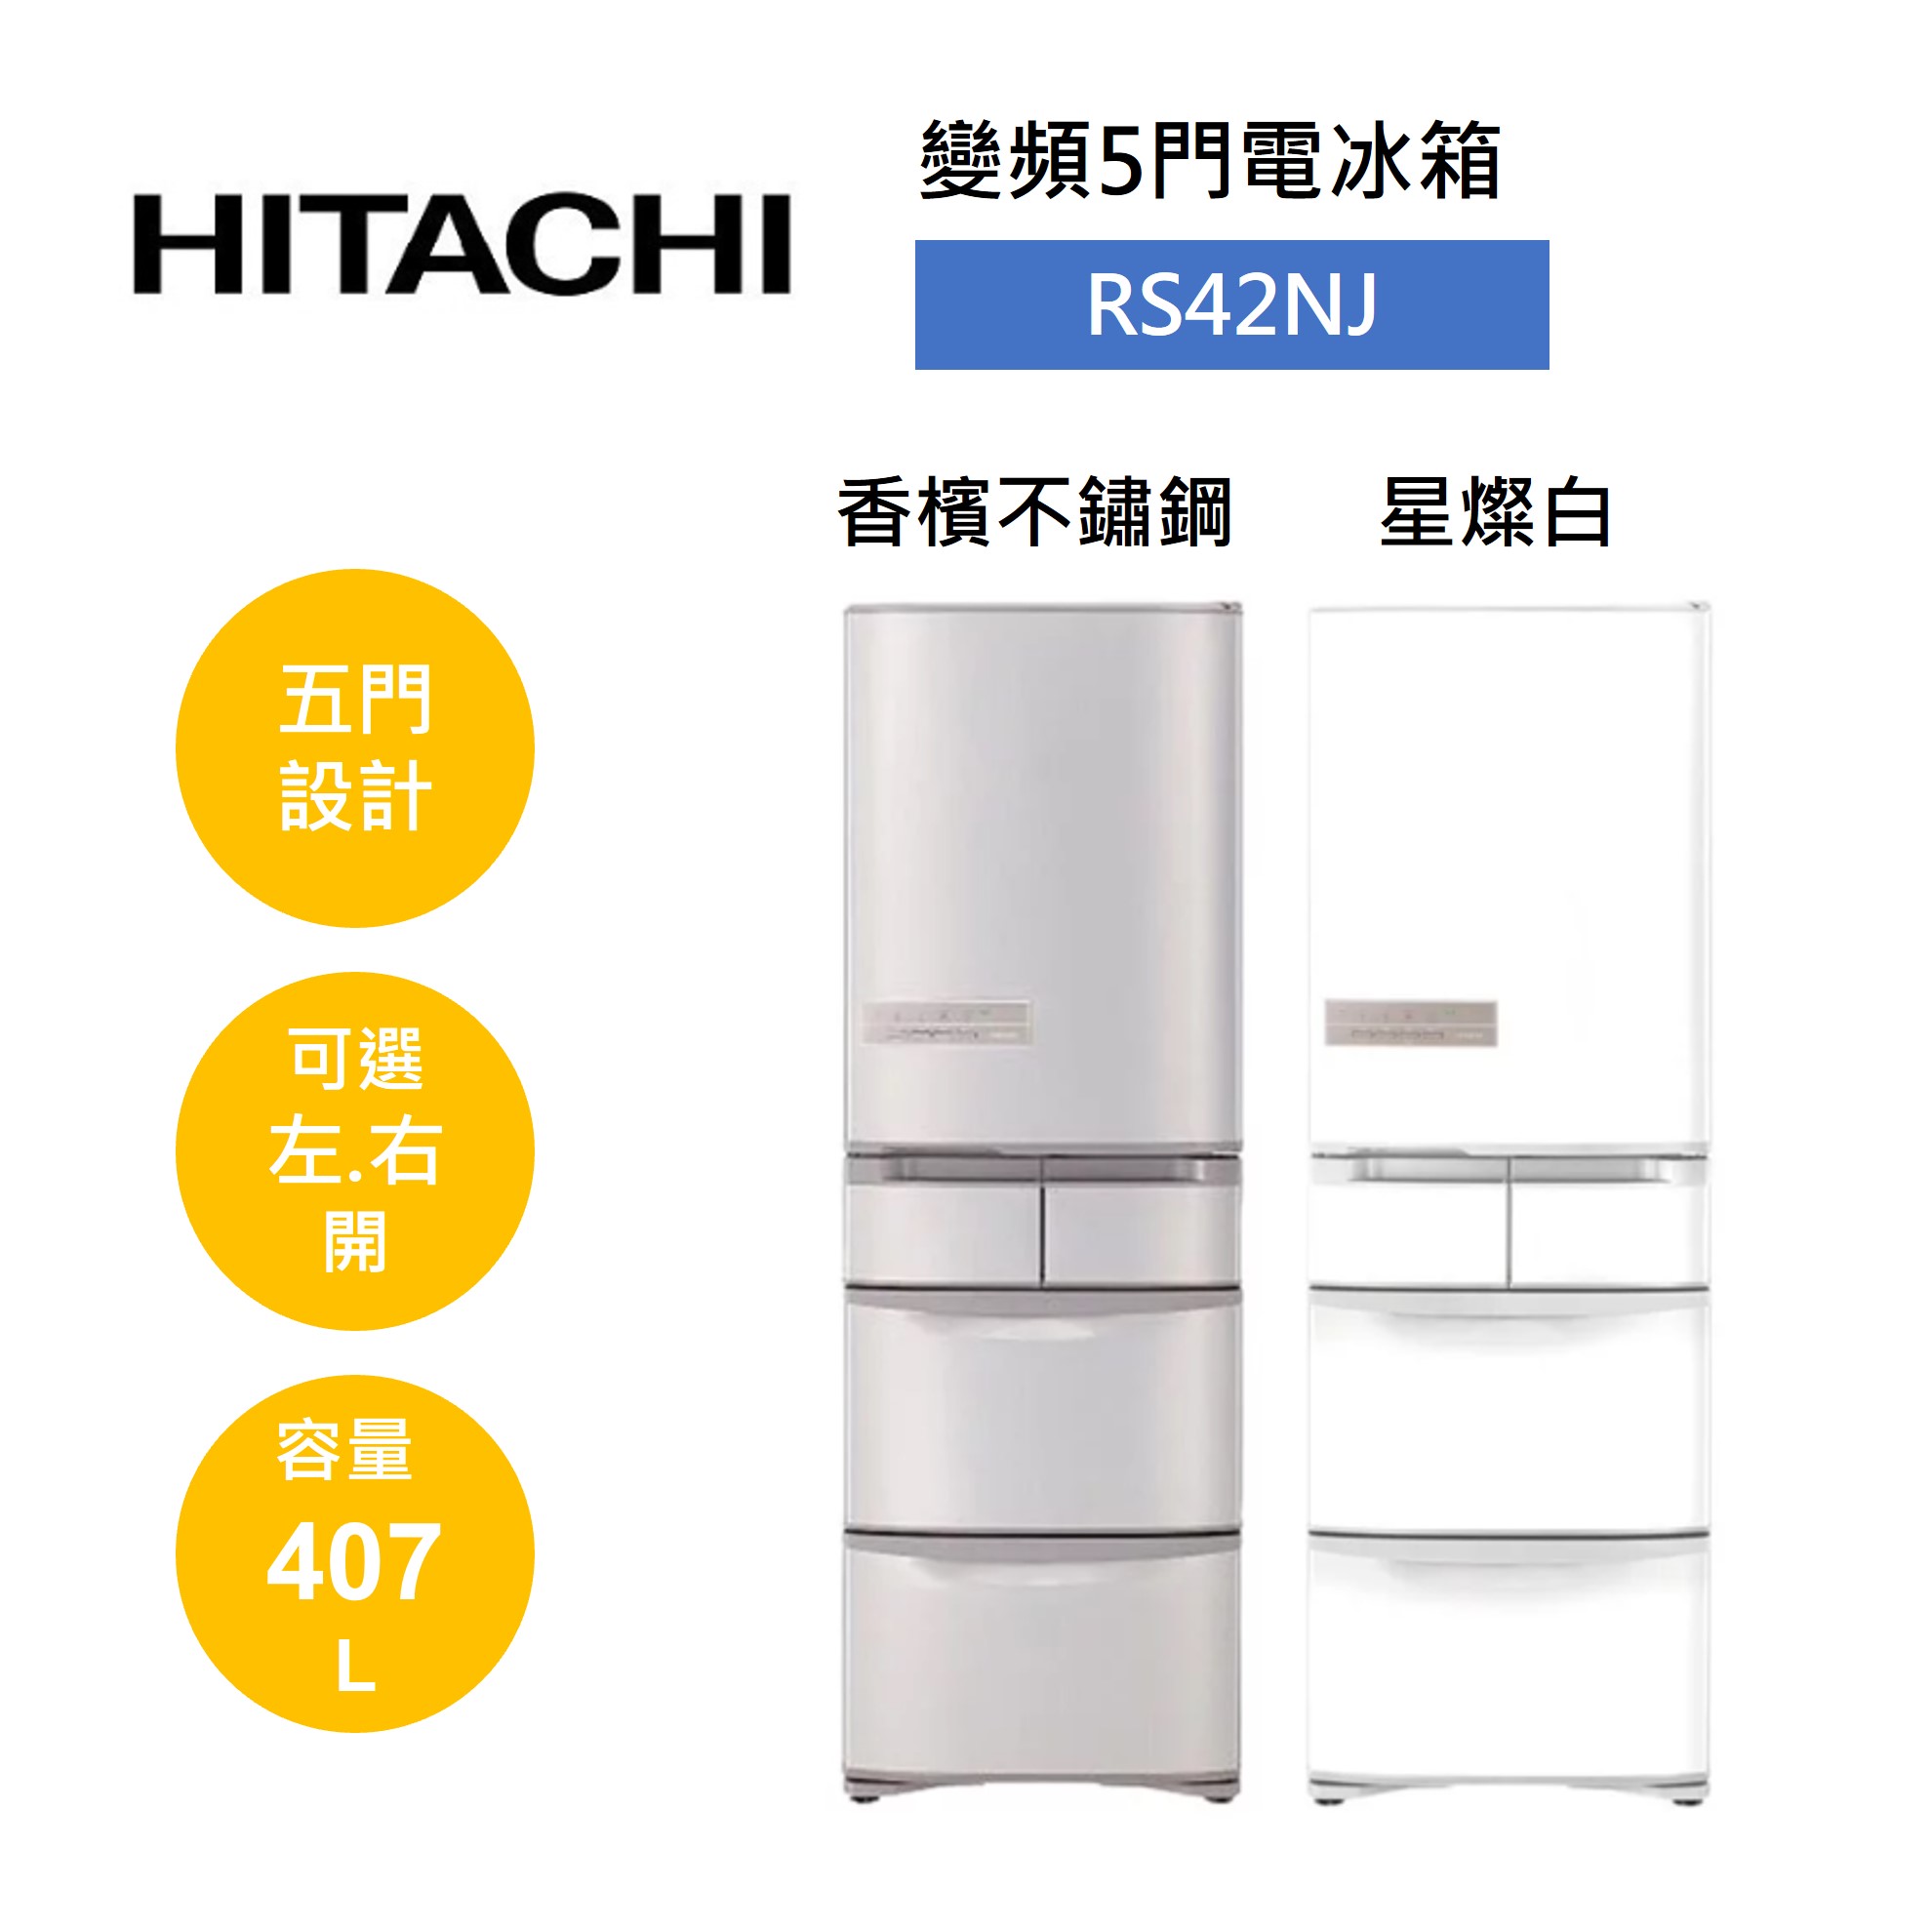 【私訊享優惠+跨店最高22%點數回饋】HITACHI 日立 407公升 日製 五門變頻冰箱 RS42NJ RS42NJL(有兩色)